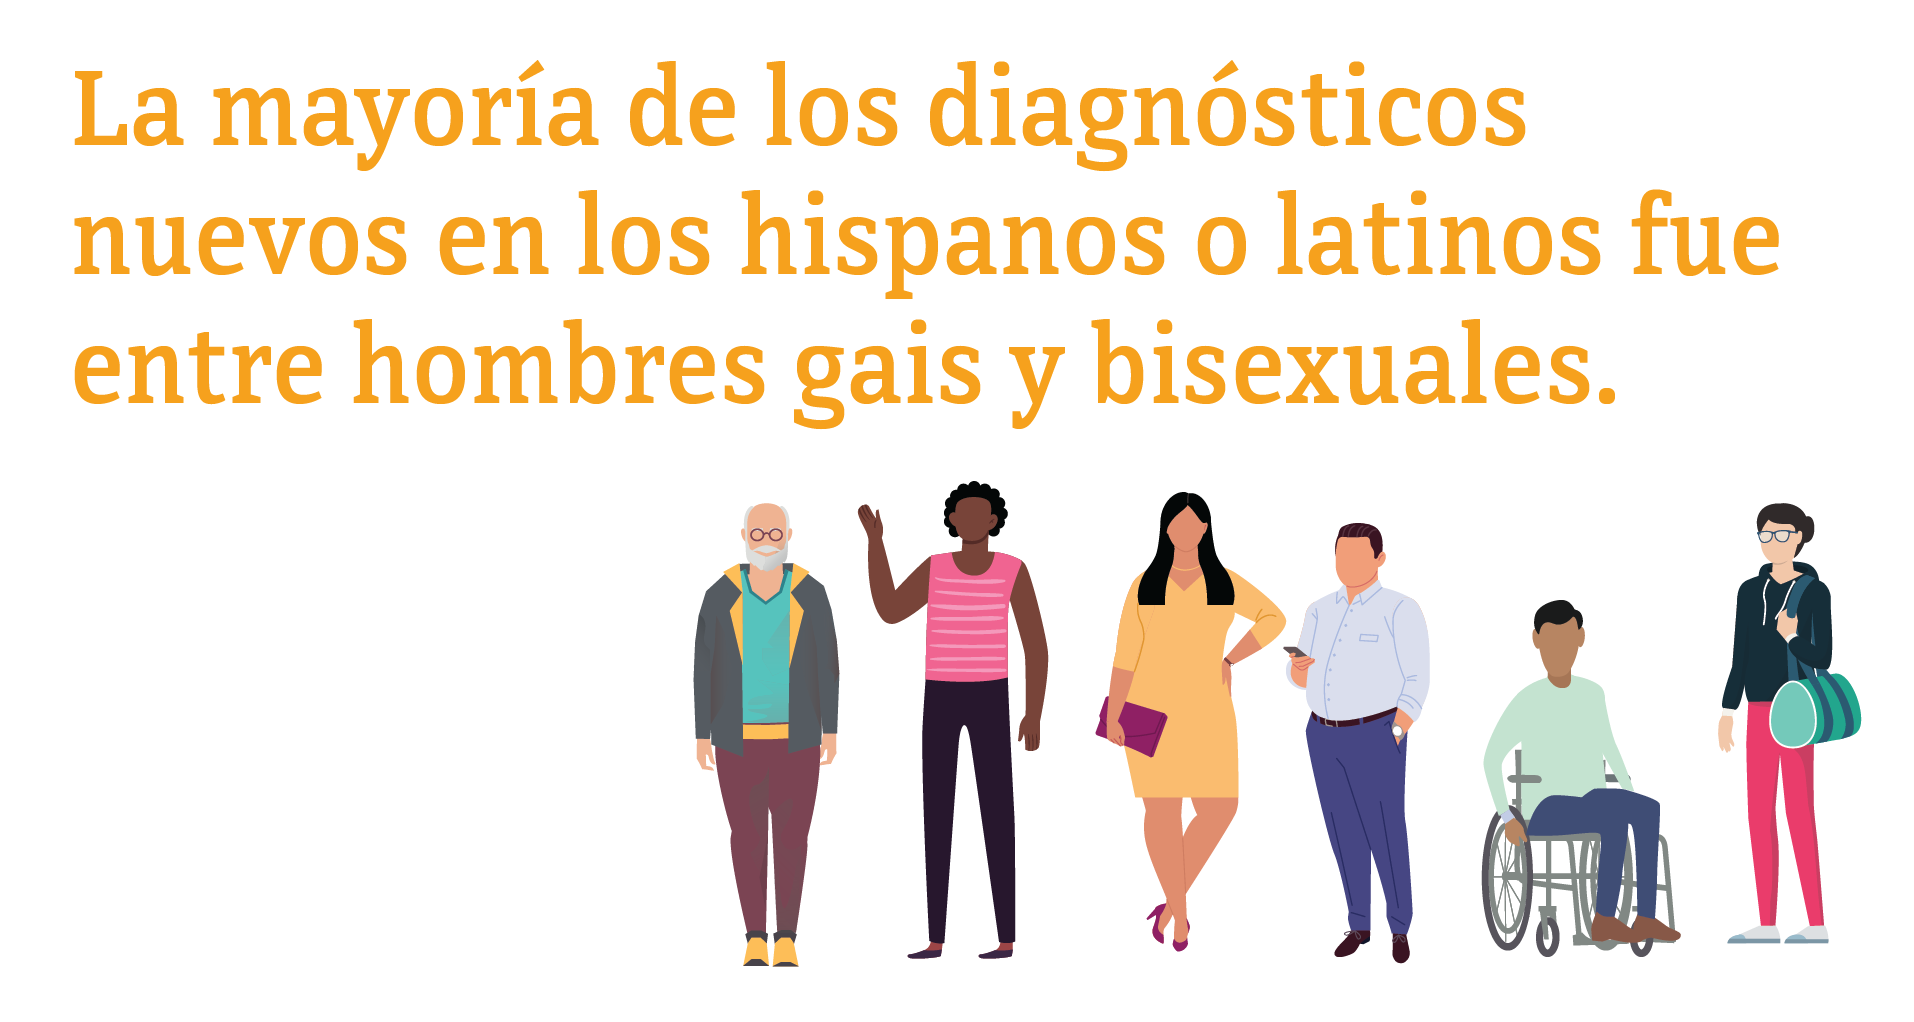 La mayoría de los diagnósticos nuevos en los hispanos o latinos fue entre hombres gais y bisexuales.